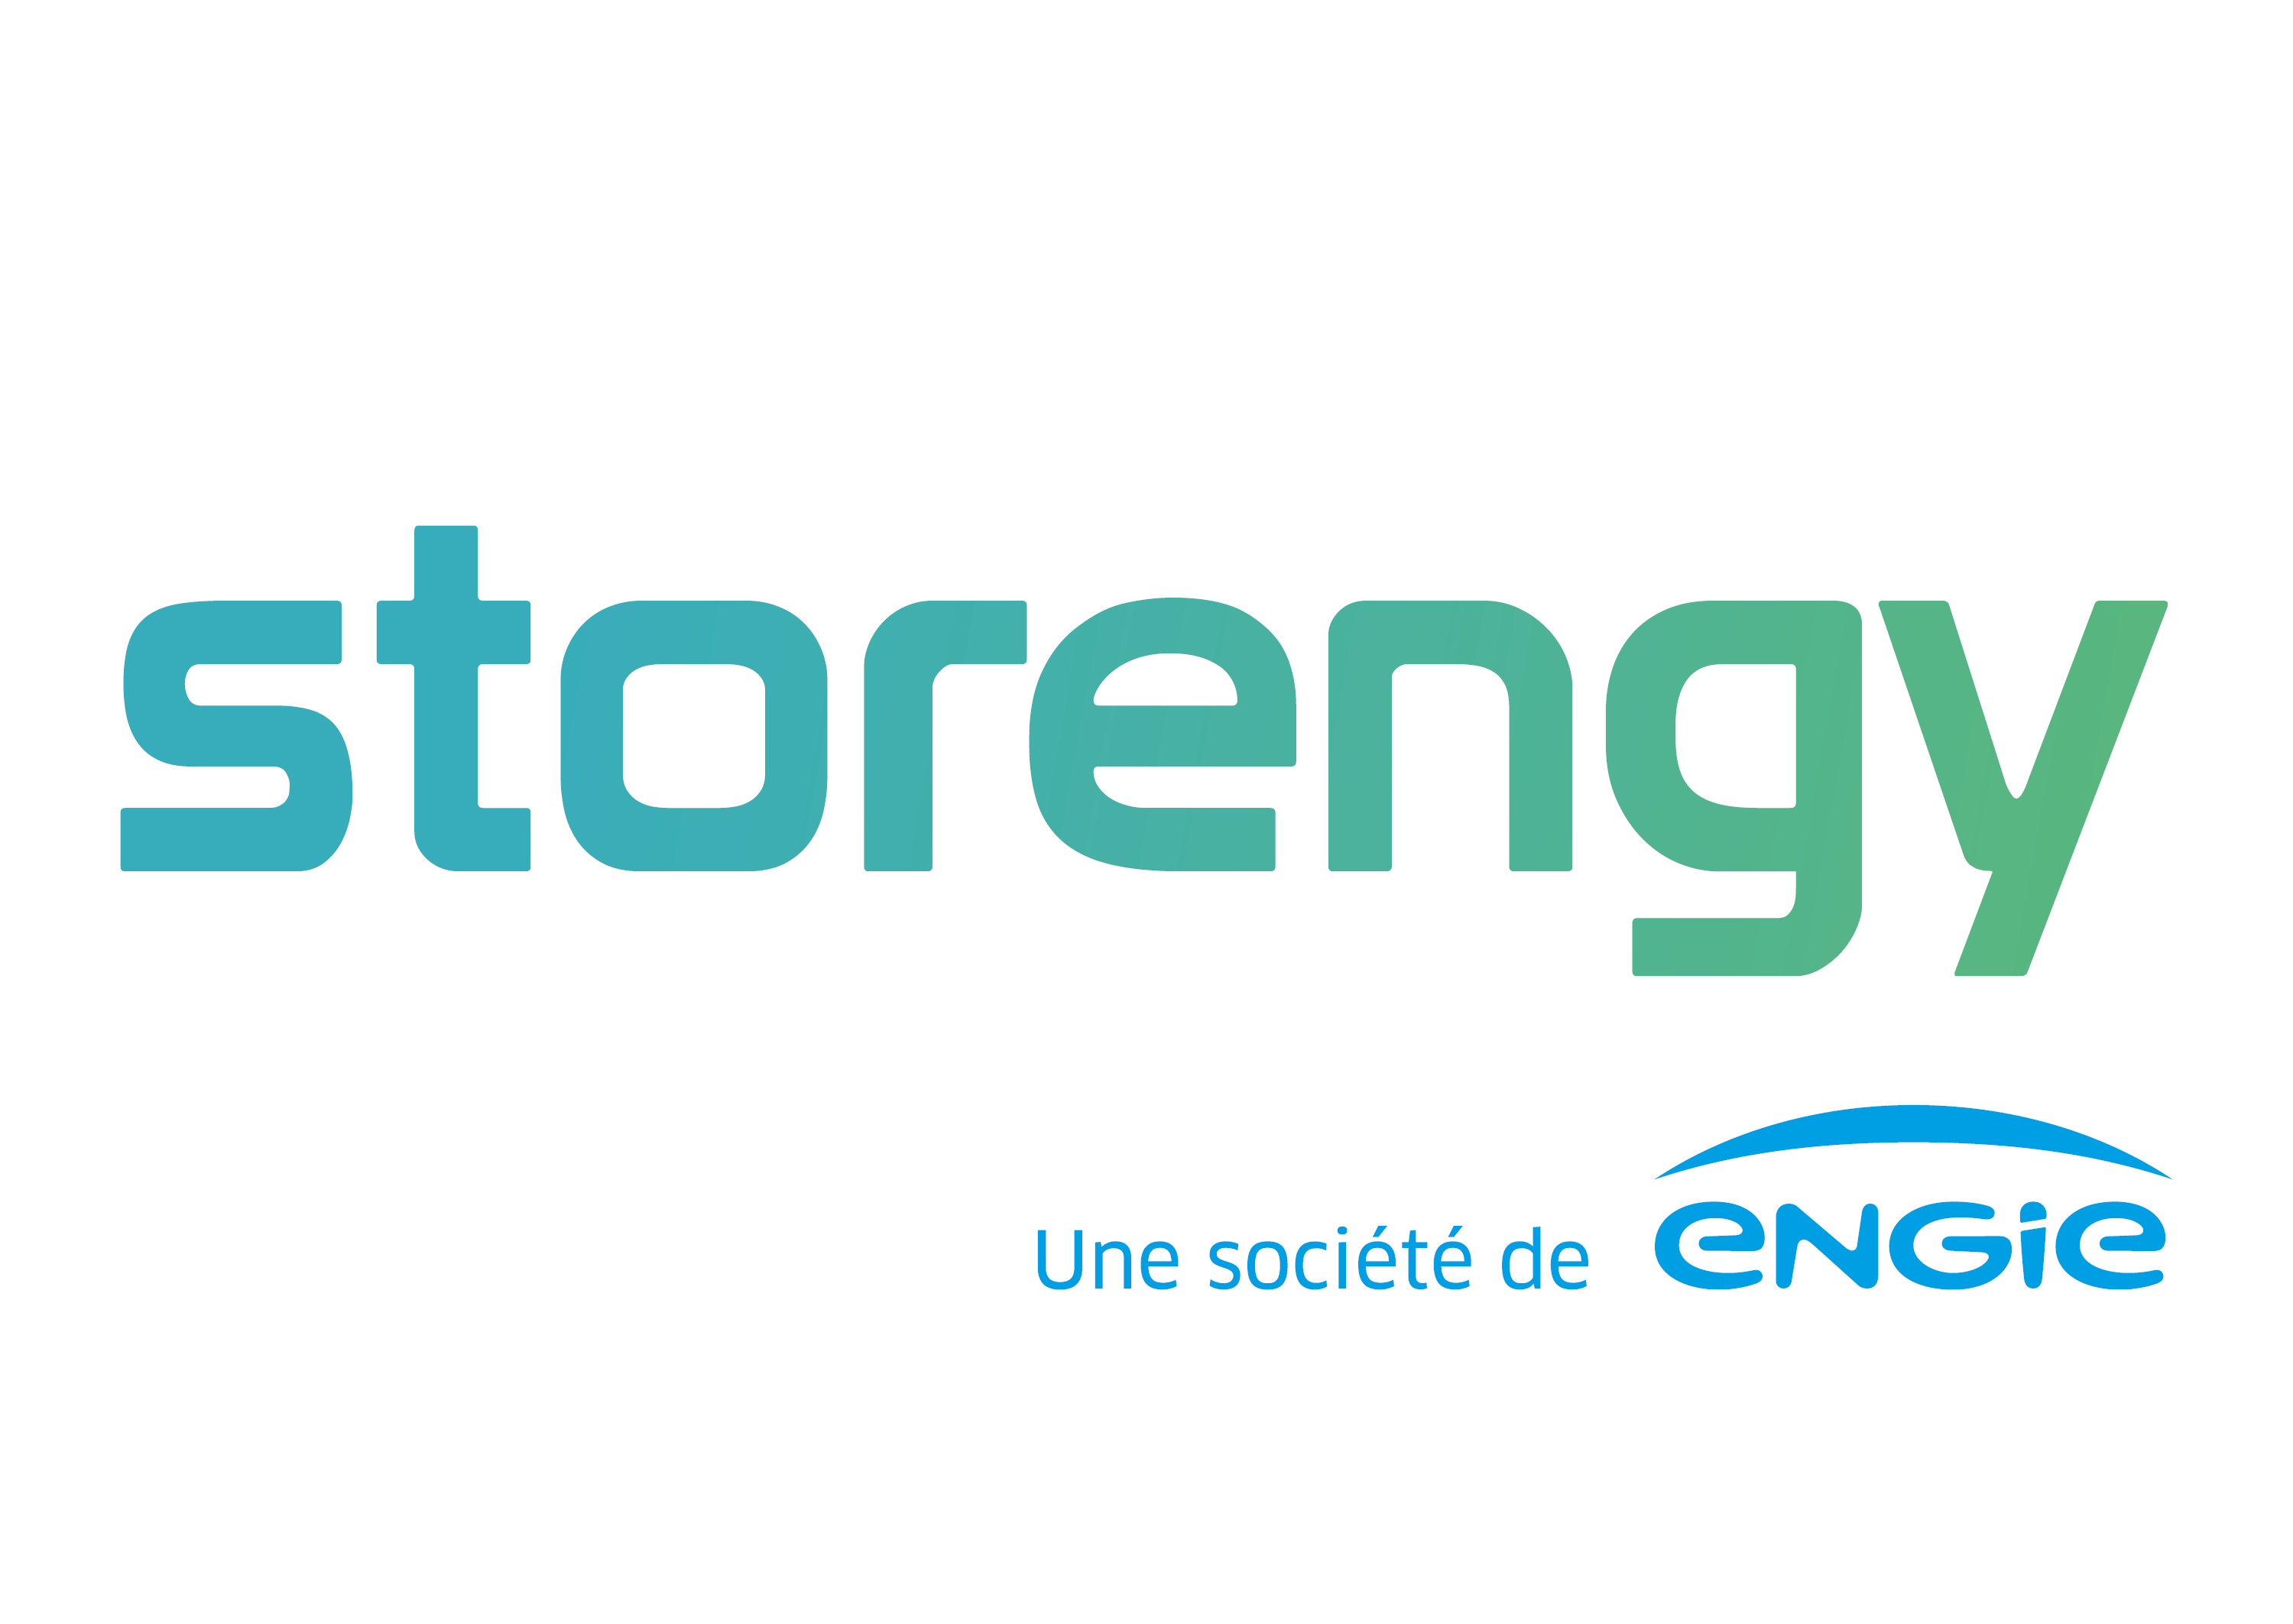 Storengy logo